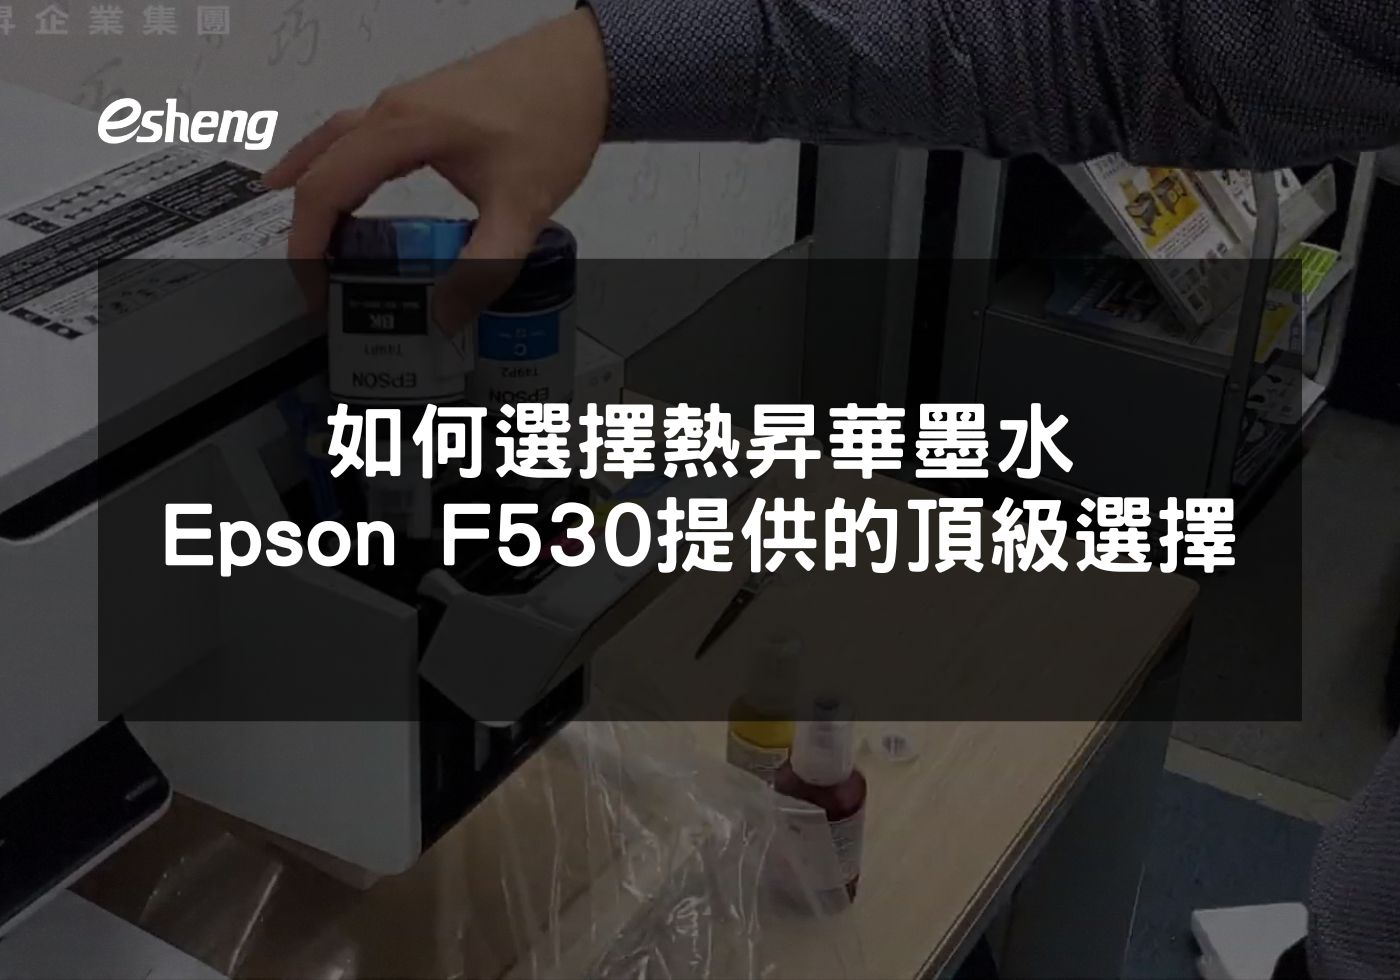 如何選擇熱昇華墨水 Epson F530提供的頂級選擇